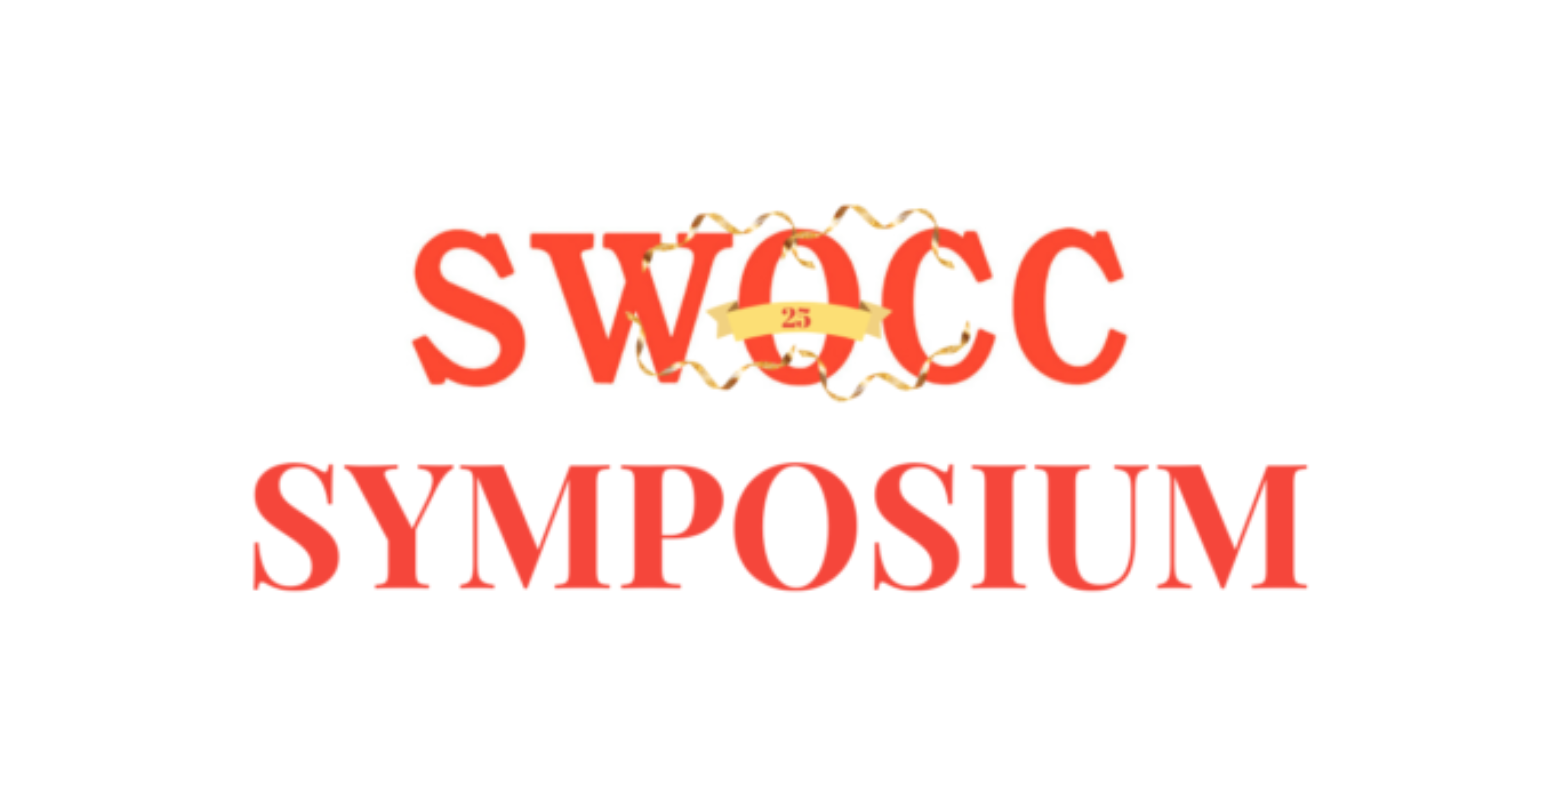  SWOCC Symposium en 25-jarige jubileum